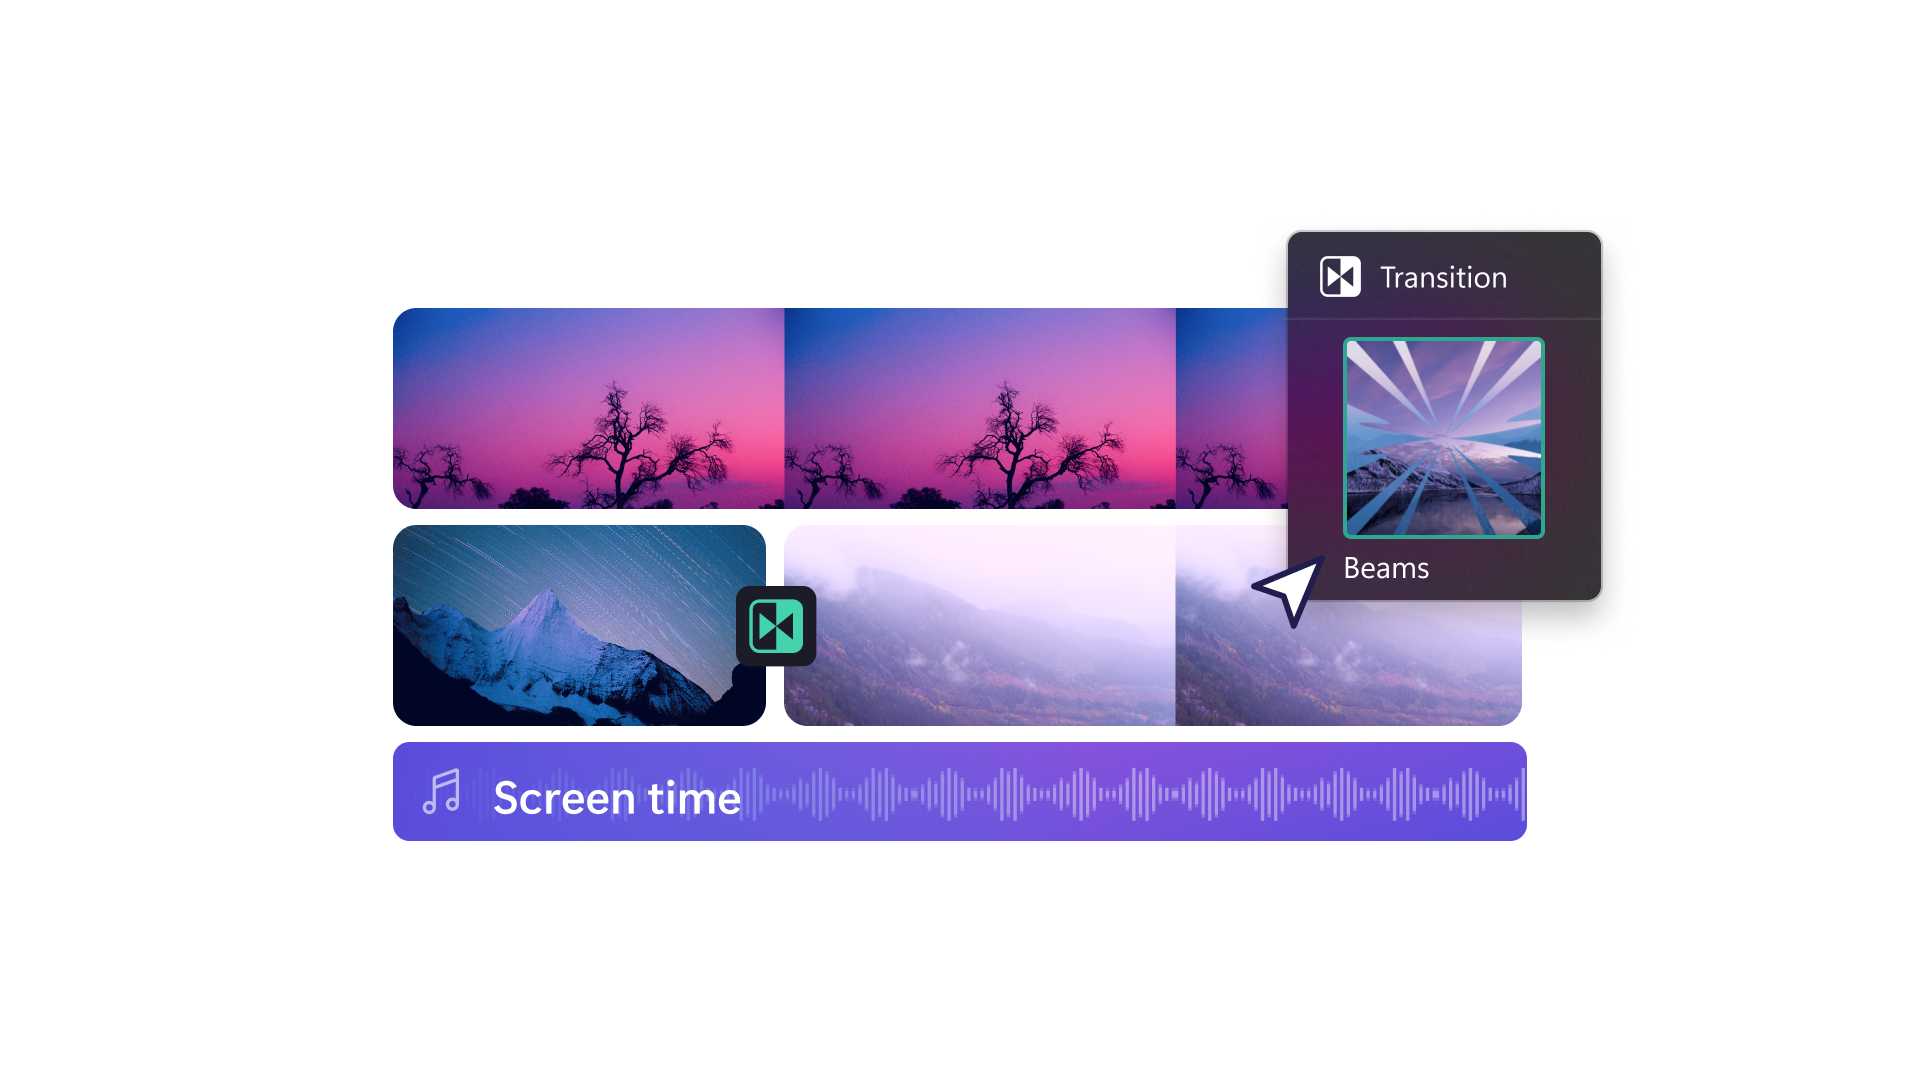 Un'immagine di contenuti multimediali diversi in fase di editing su Clipchamp. Mostra video sulla natura, musica e una transizione.